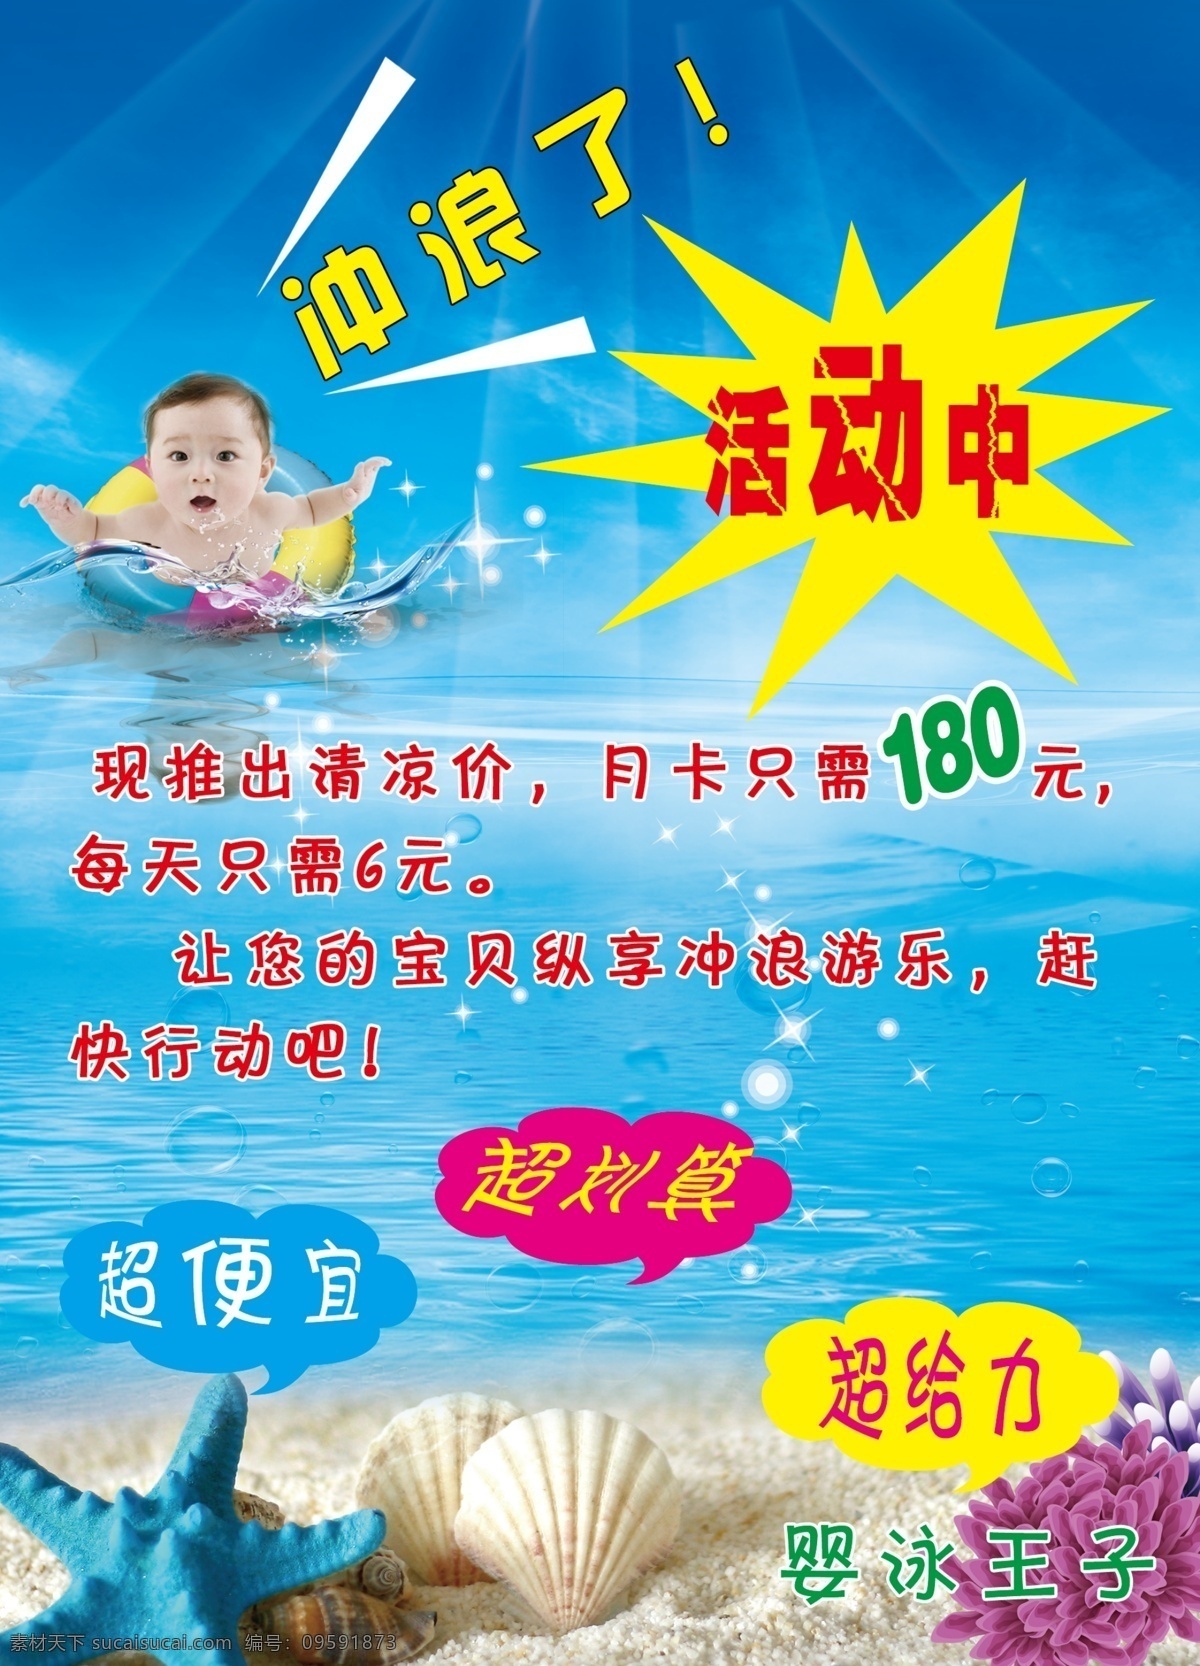 婴儿游泳馆 婴儿海报 游泳活动 冲浪 广告设计模板 源文件